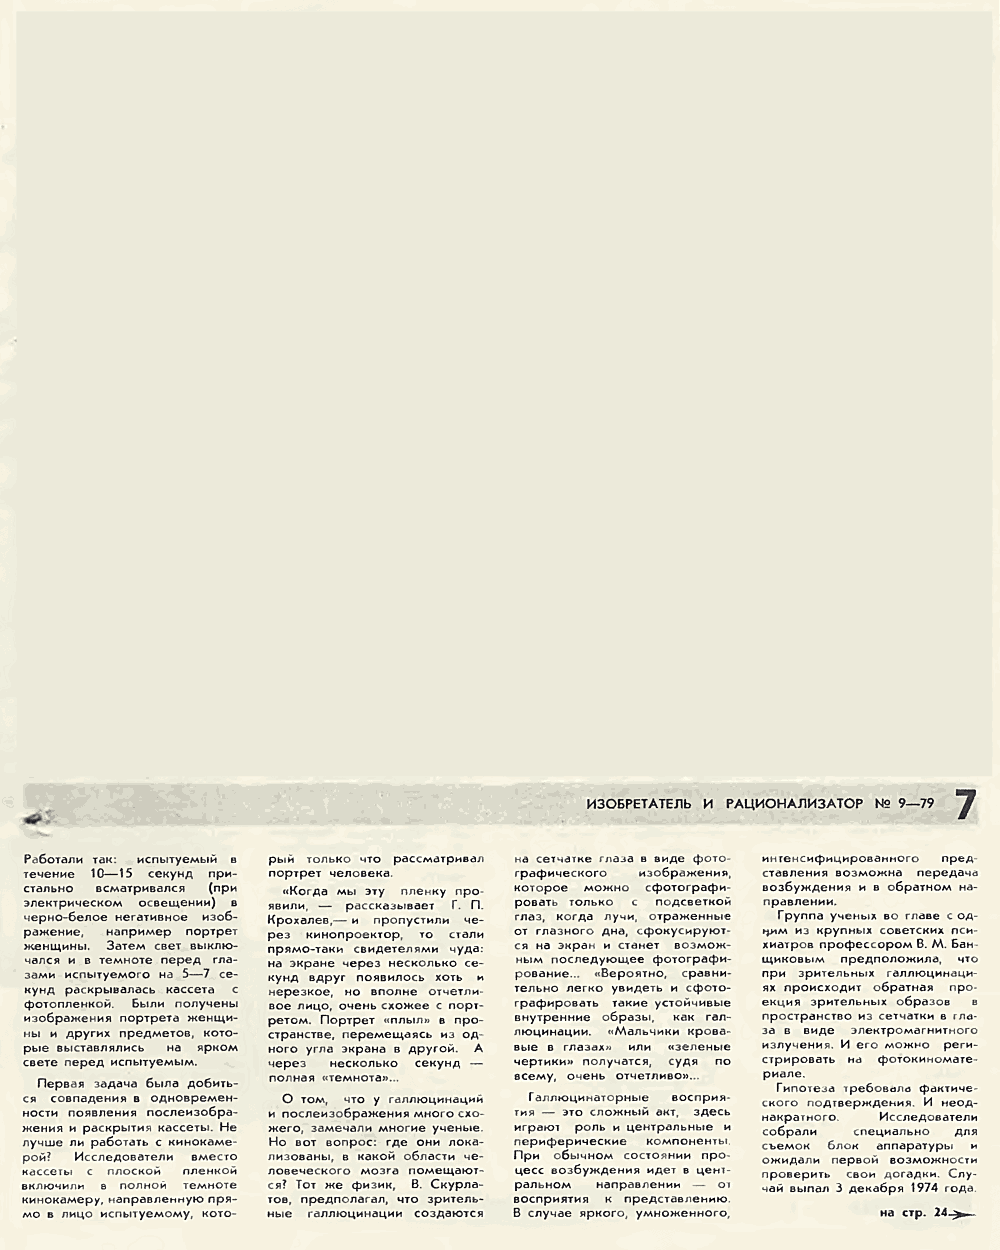 Подсознание на фотобумаге. В. Богатырев. Изобретатель и рационализатор, 1979, №9, с.4-7,24-25. Фотокопия №4